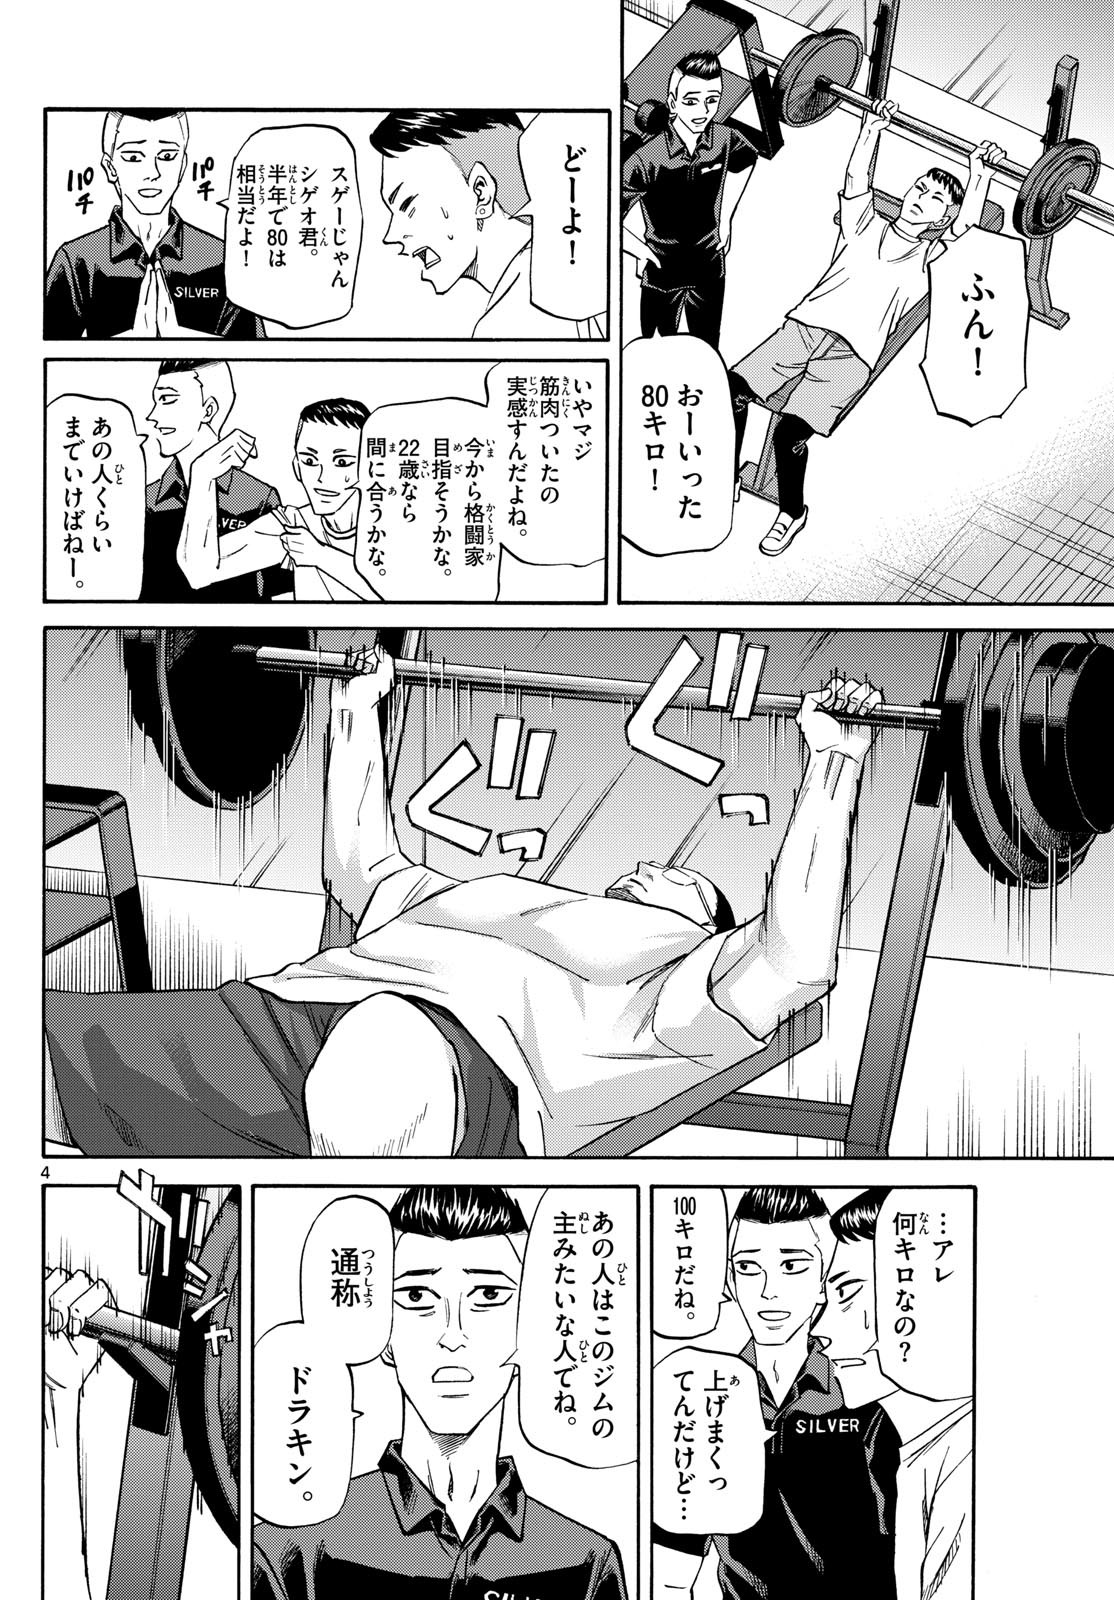 Ryu-to-Ichigo - Chapter 165 - Page 4